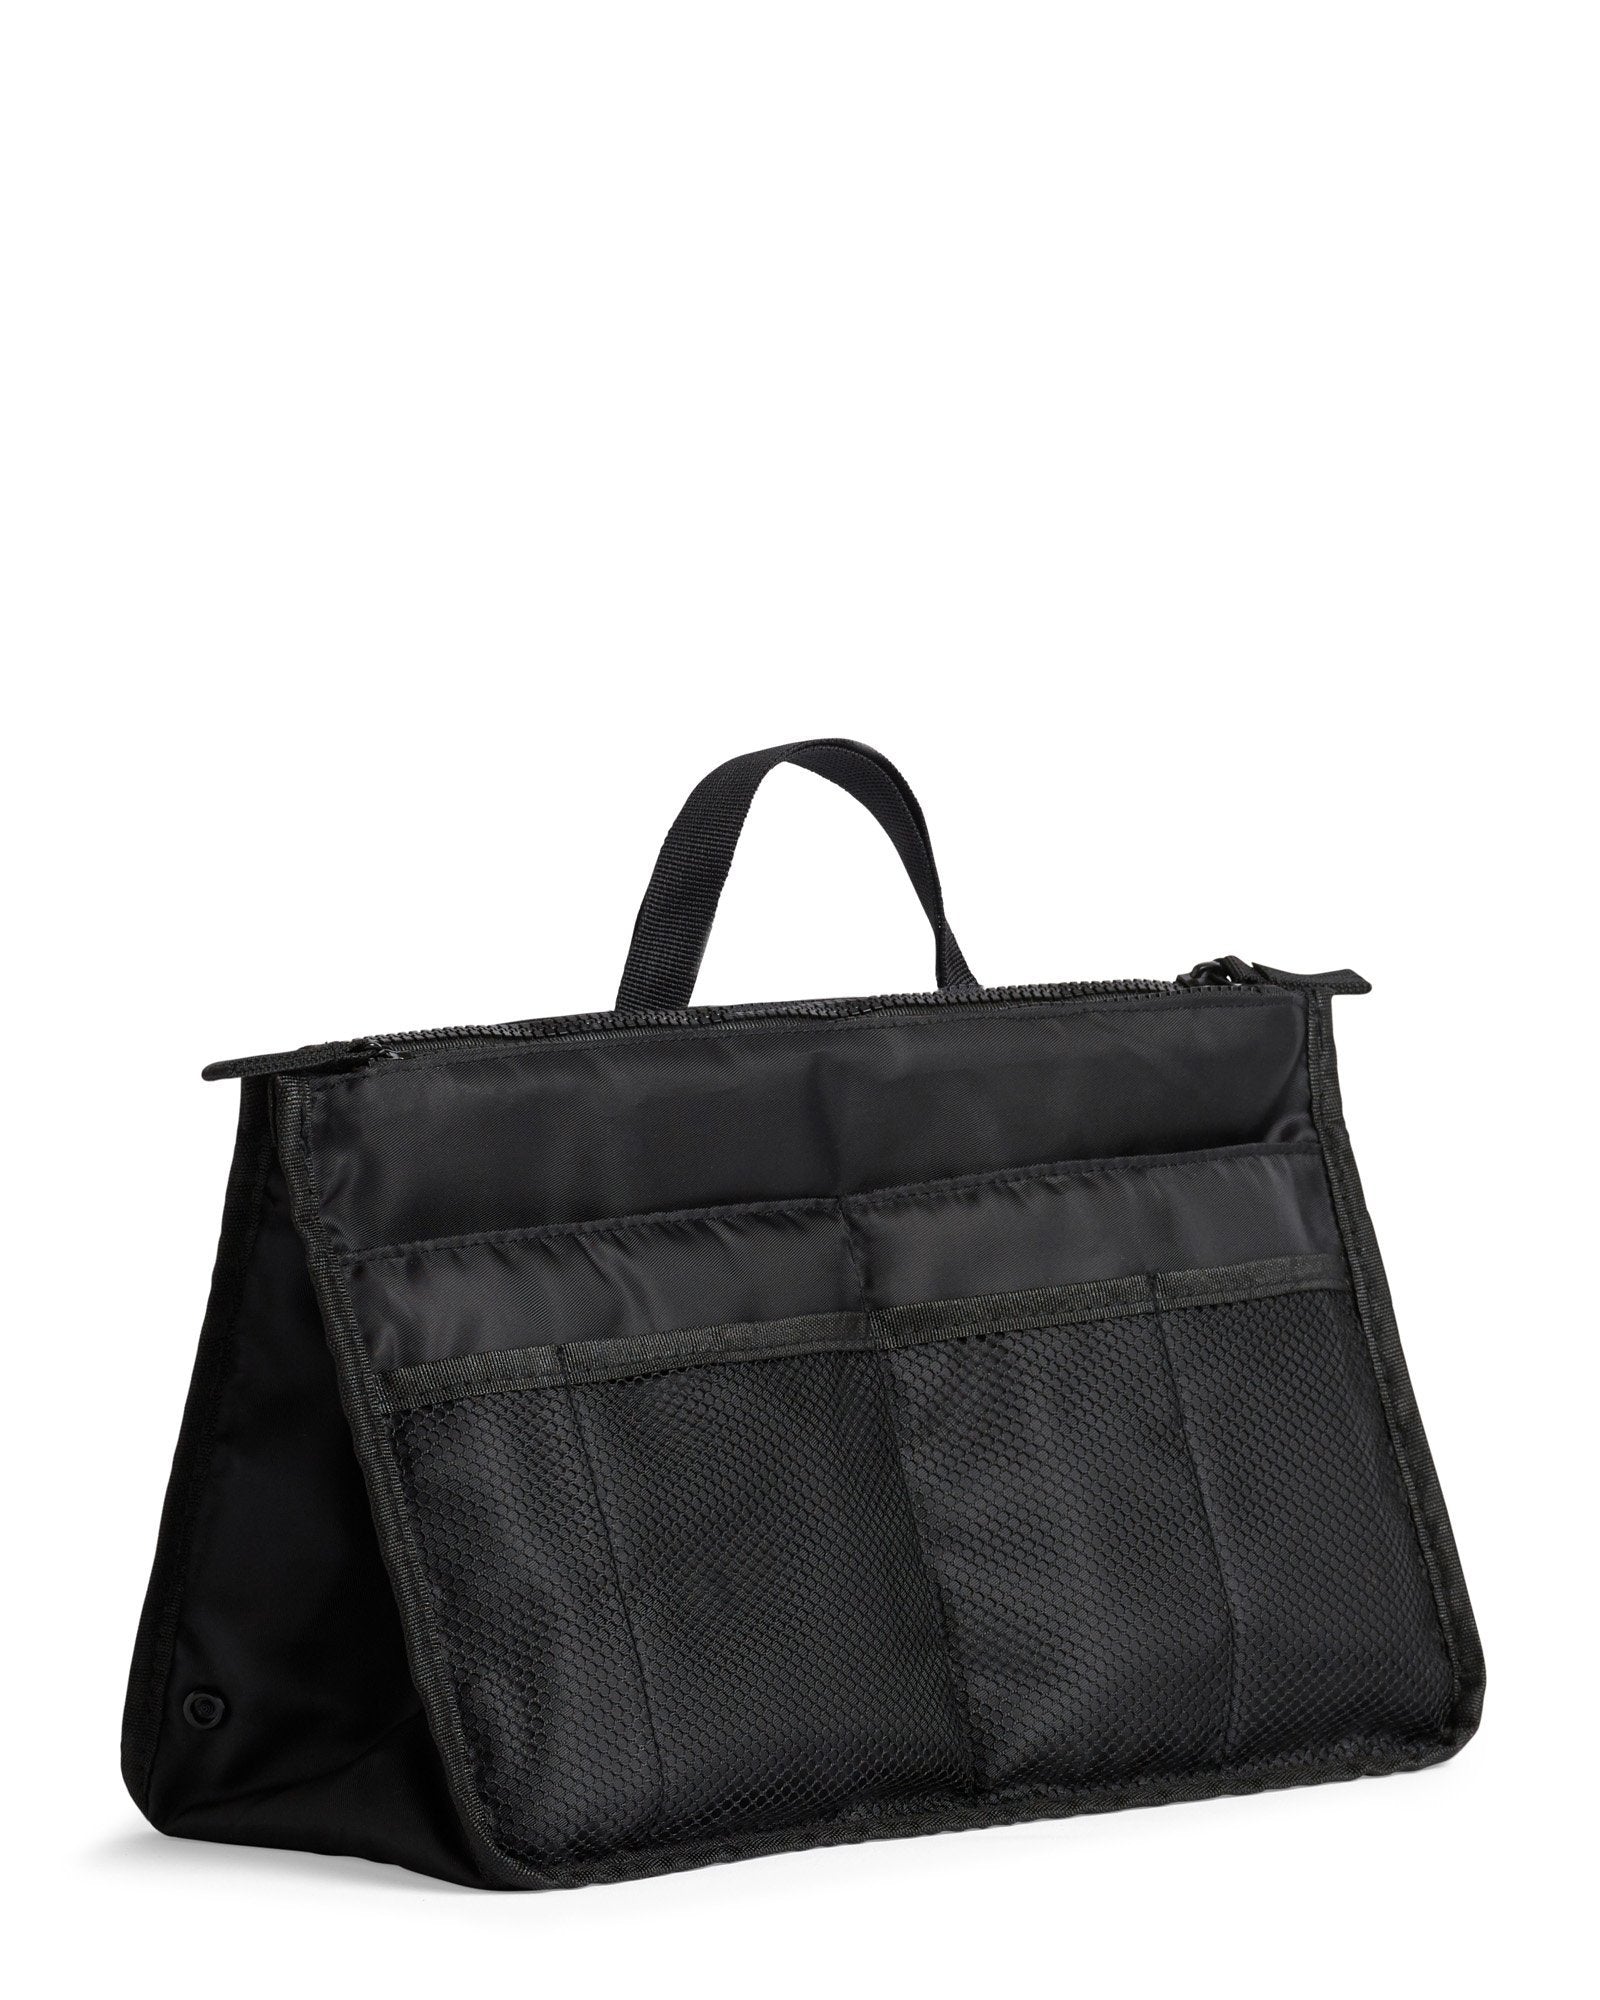 Bag Organizer / Organiser Insert (BLACK) – Prene